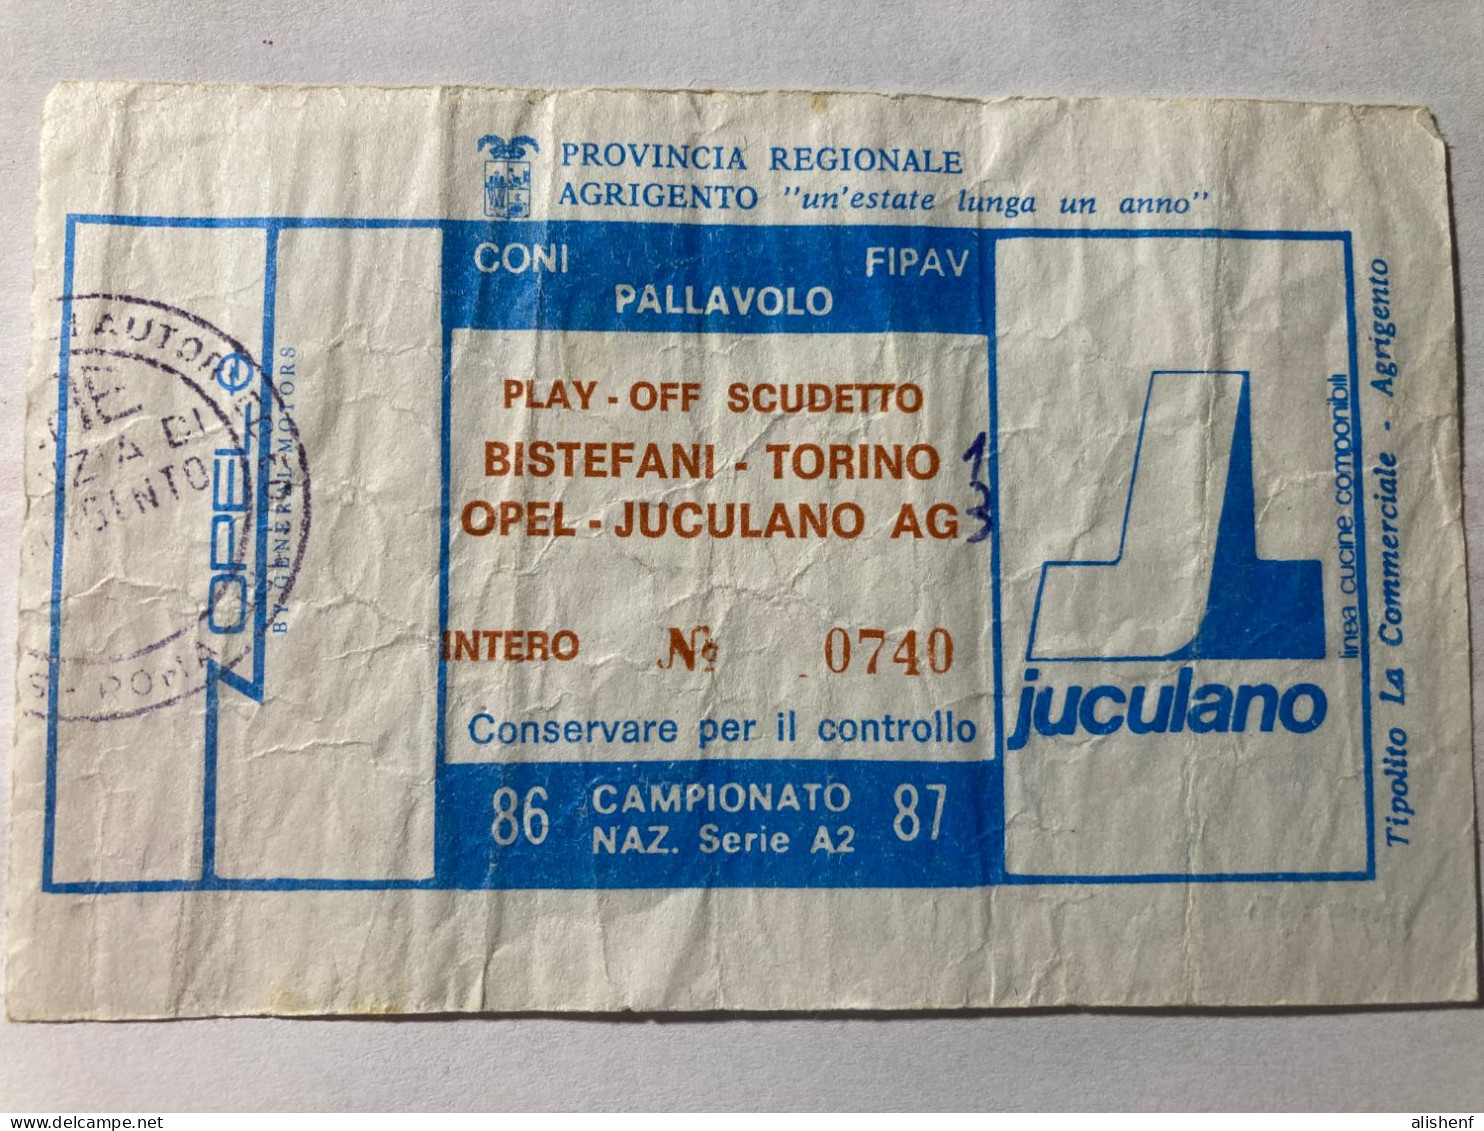 Biglietto Pallavolo Maschile A2 Play Off Scudetto Opel Juculano Agrigento Bistefani Torino 1986-87 - Tickets D'entrée